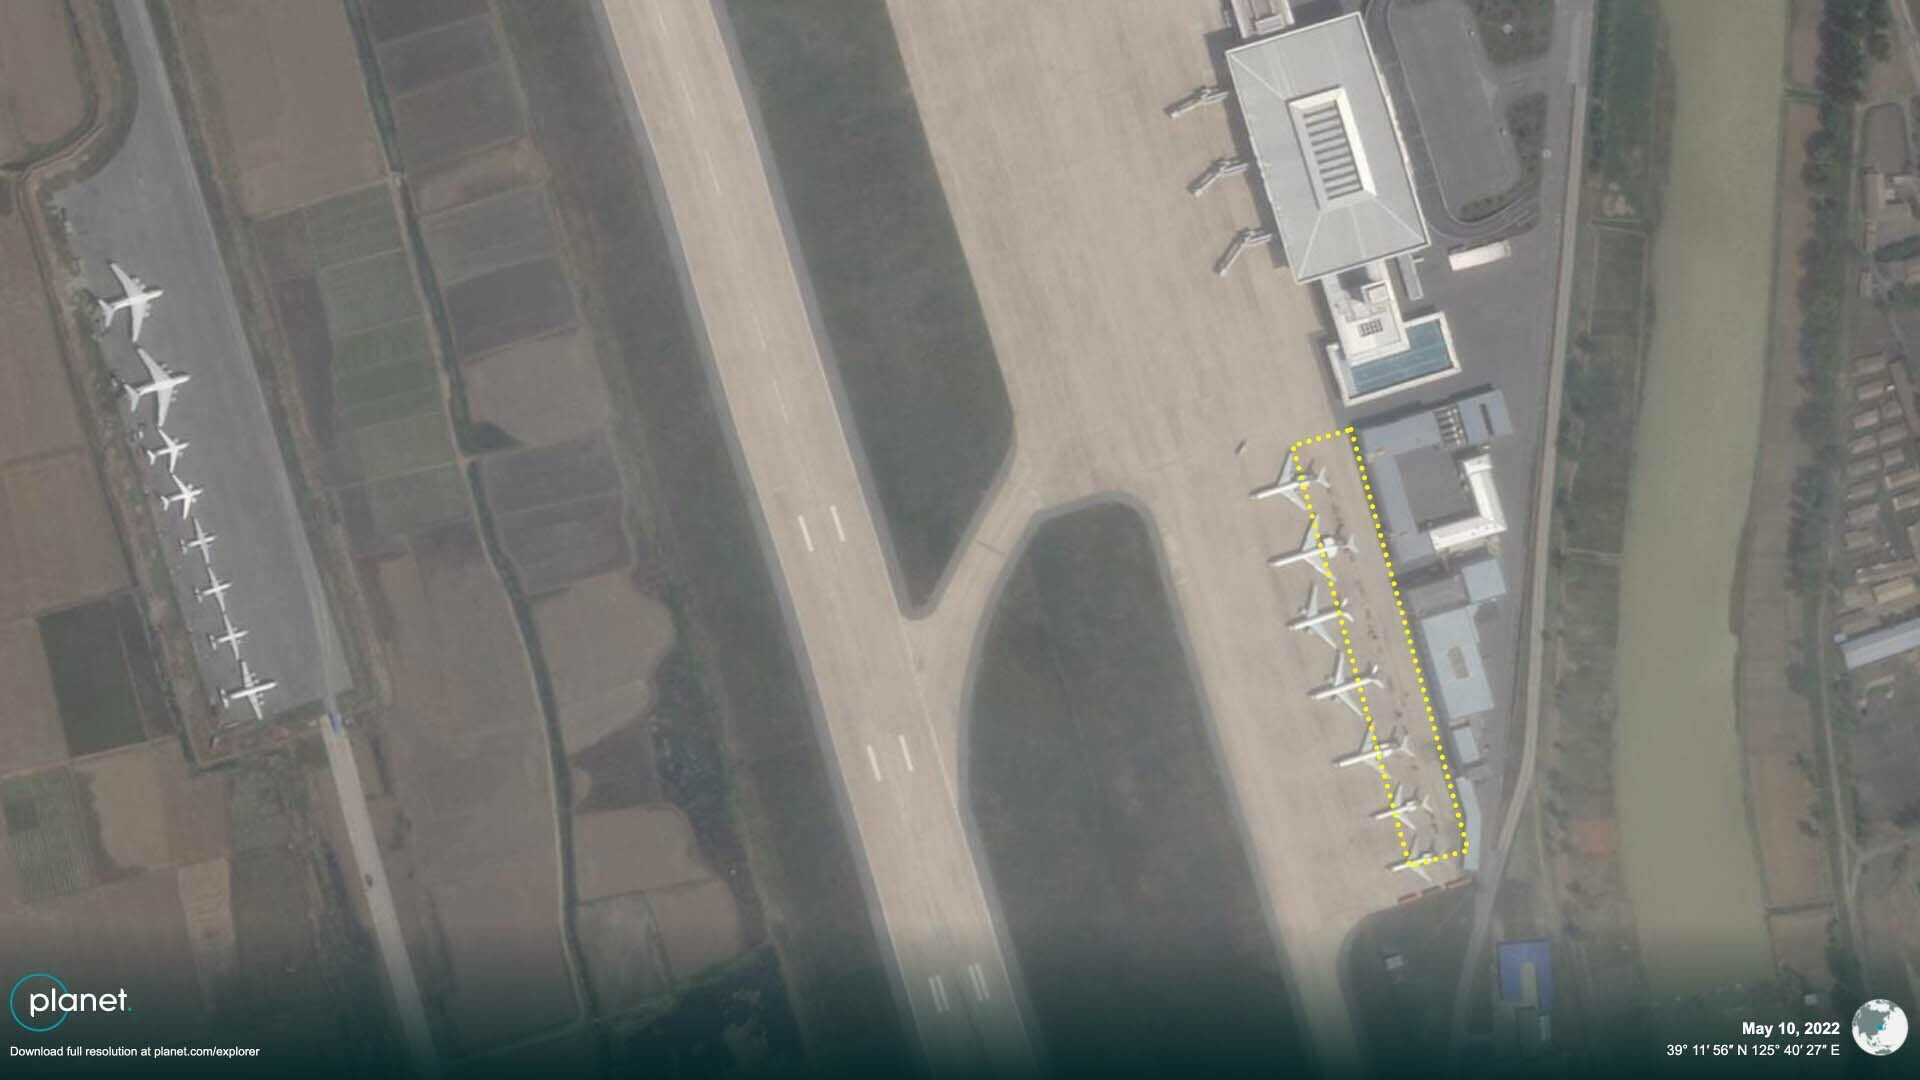 planet-may10-skysat-pyongyang-airport-crates-equipment-original-spot.jpg